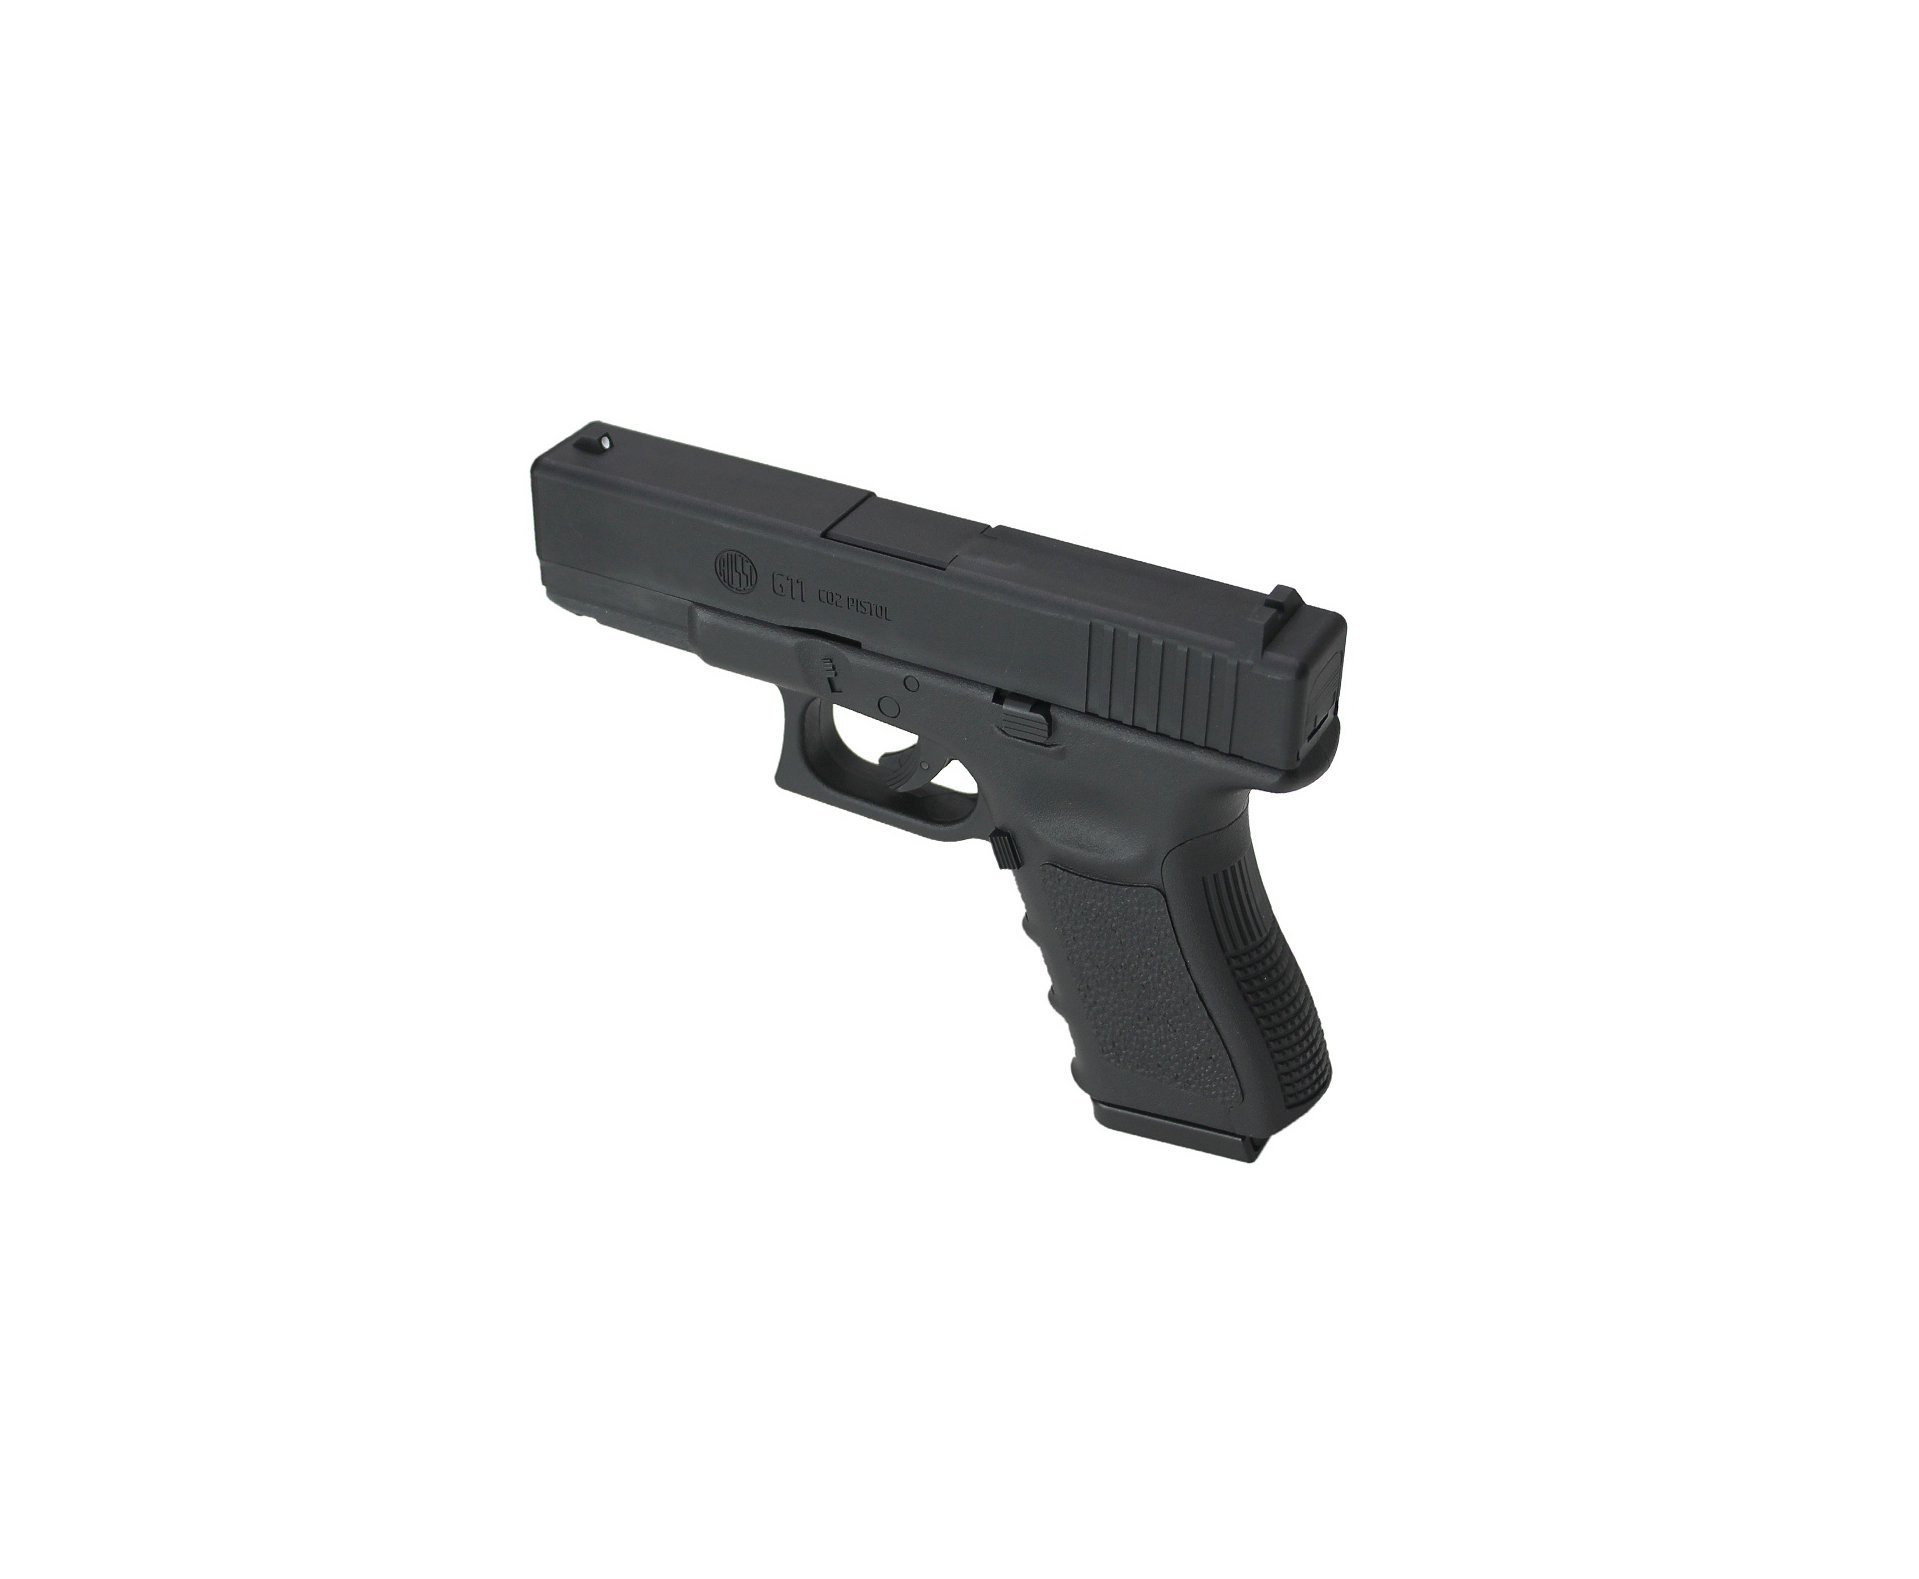 Artefato de Pressão Rossi G11 6,0mm Glock 19 NBB ABS